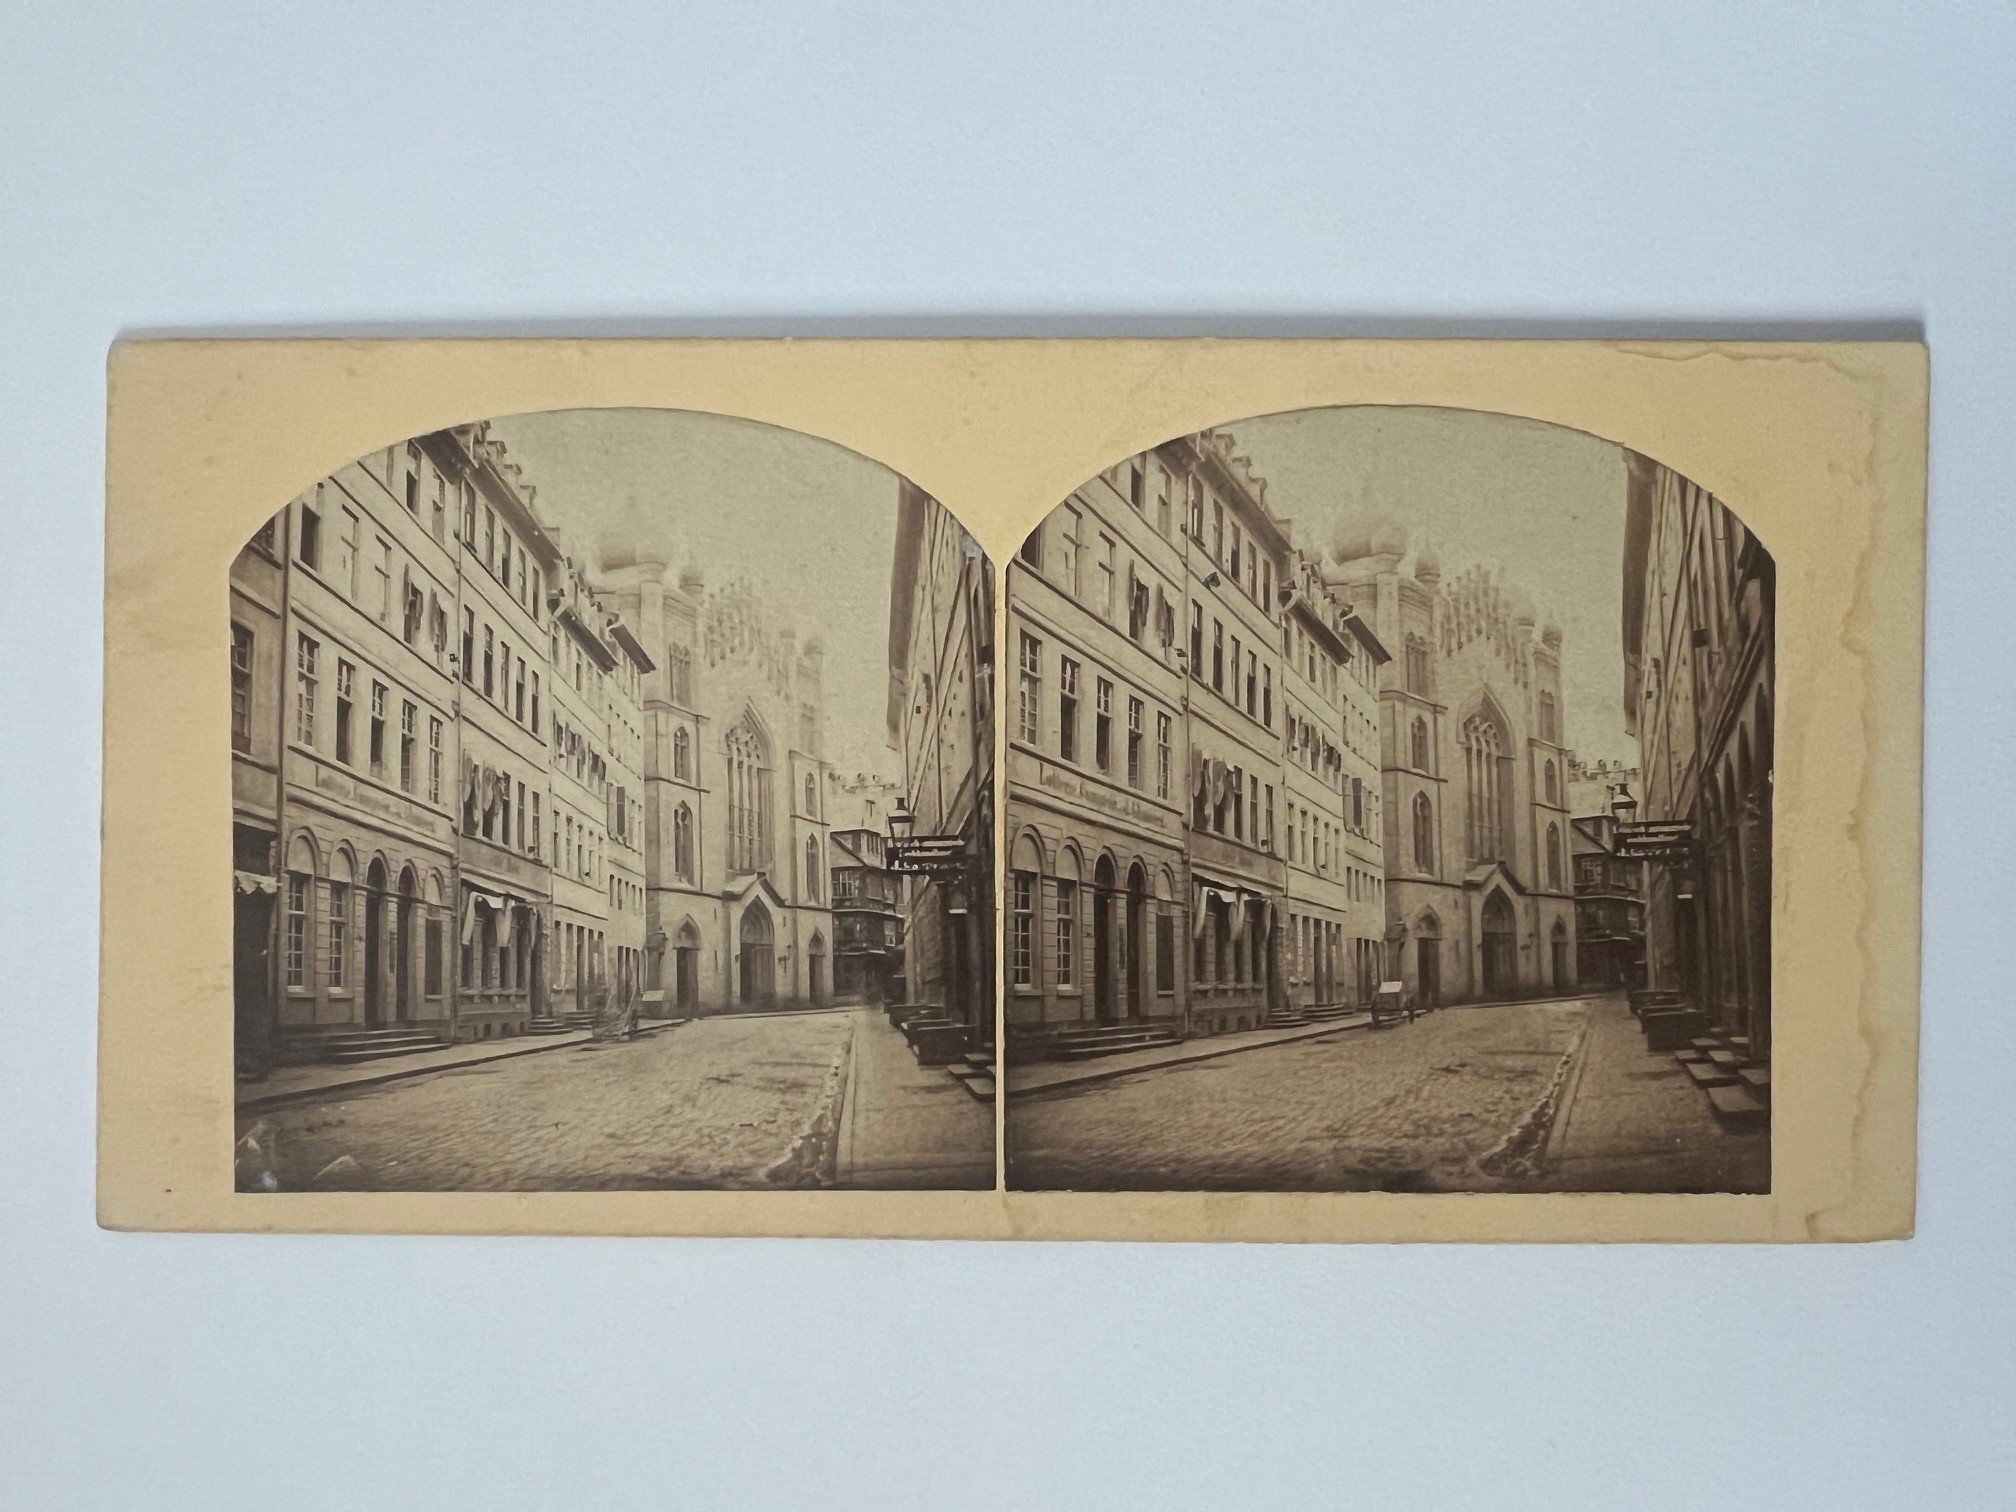 Stereobild, Unbekannter Fotograf, Frankfurt, Judengasse mit Synagoge, ca. 1865. (Taunus-Rhein-Main - Regionalgeschichtliche Sammlung Dr. Stefan Naas CC BY-NC-SA)